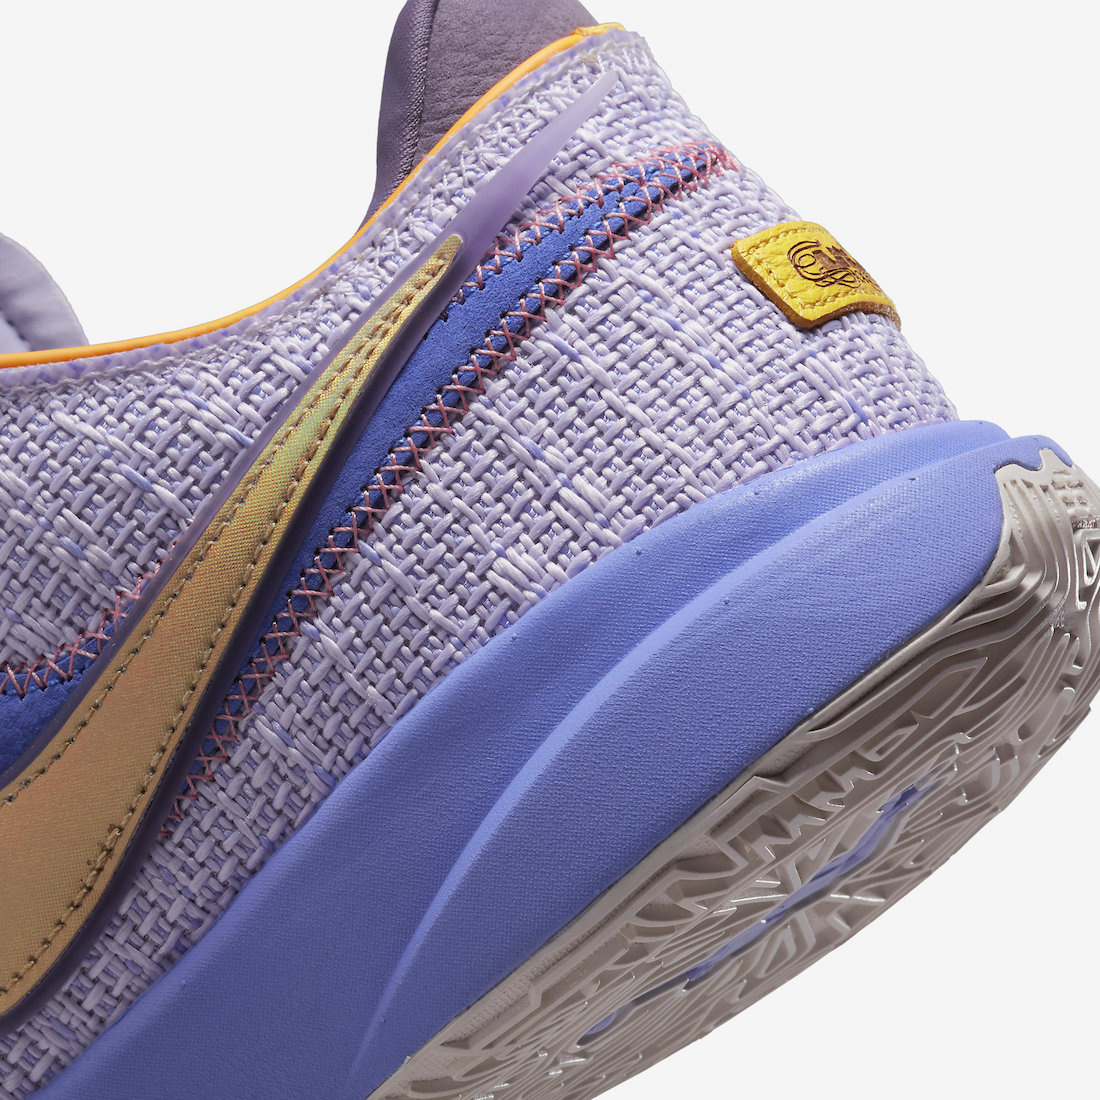 Nike LeBron 20 Violet Frost Purple Pulse DJ5423-500 Release Date